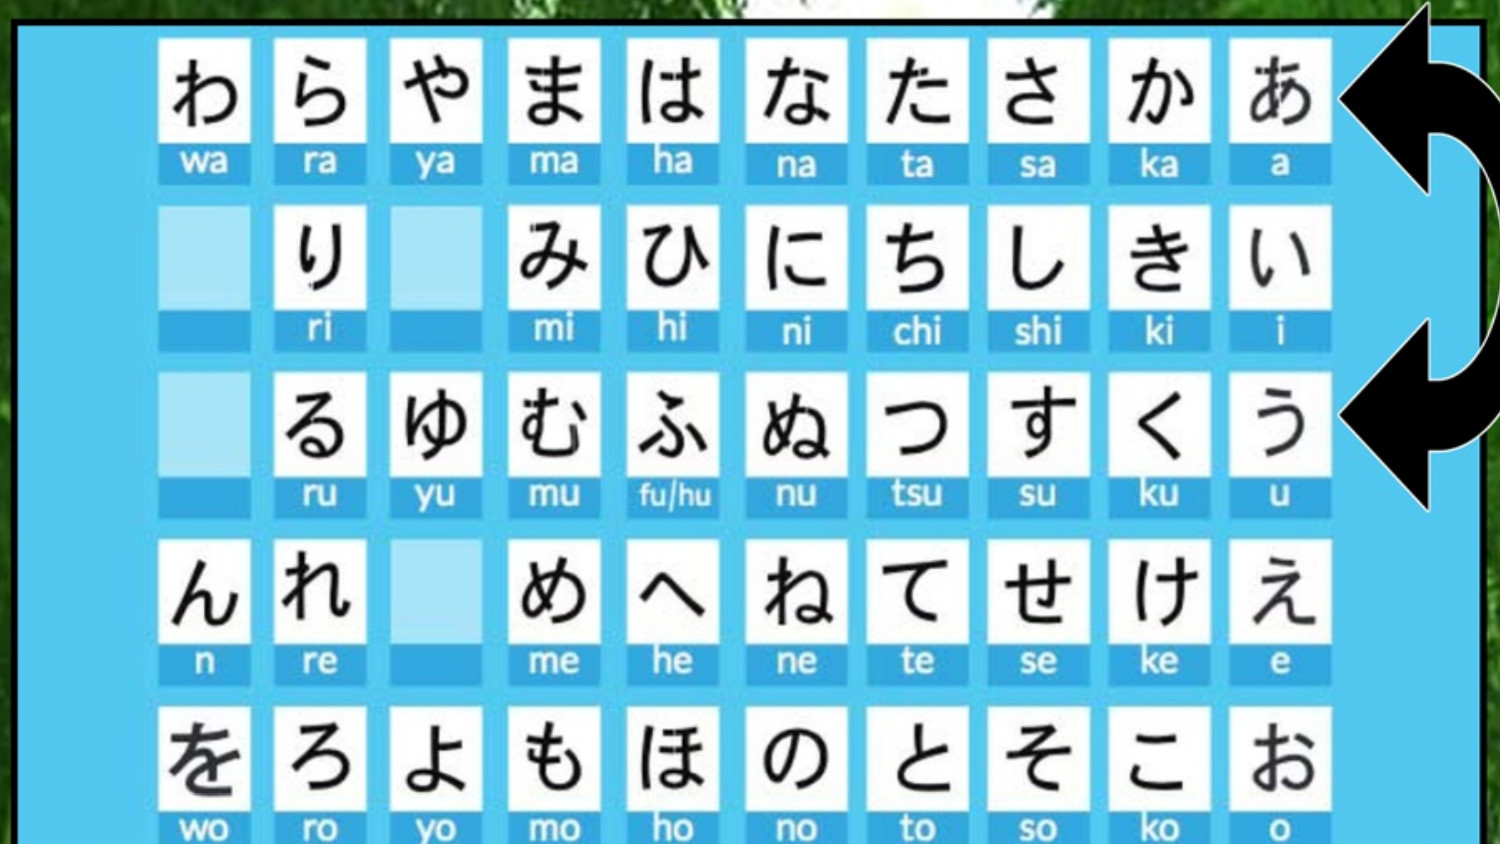 Japanese - Work Book - Verbs Featured Screenshot #1